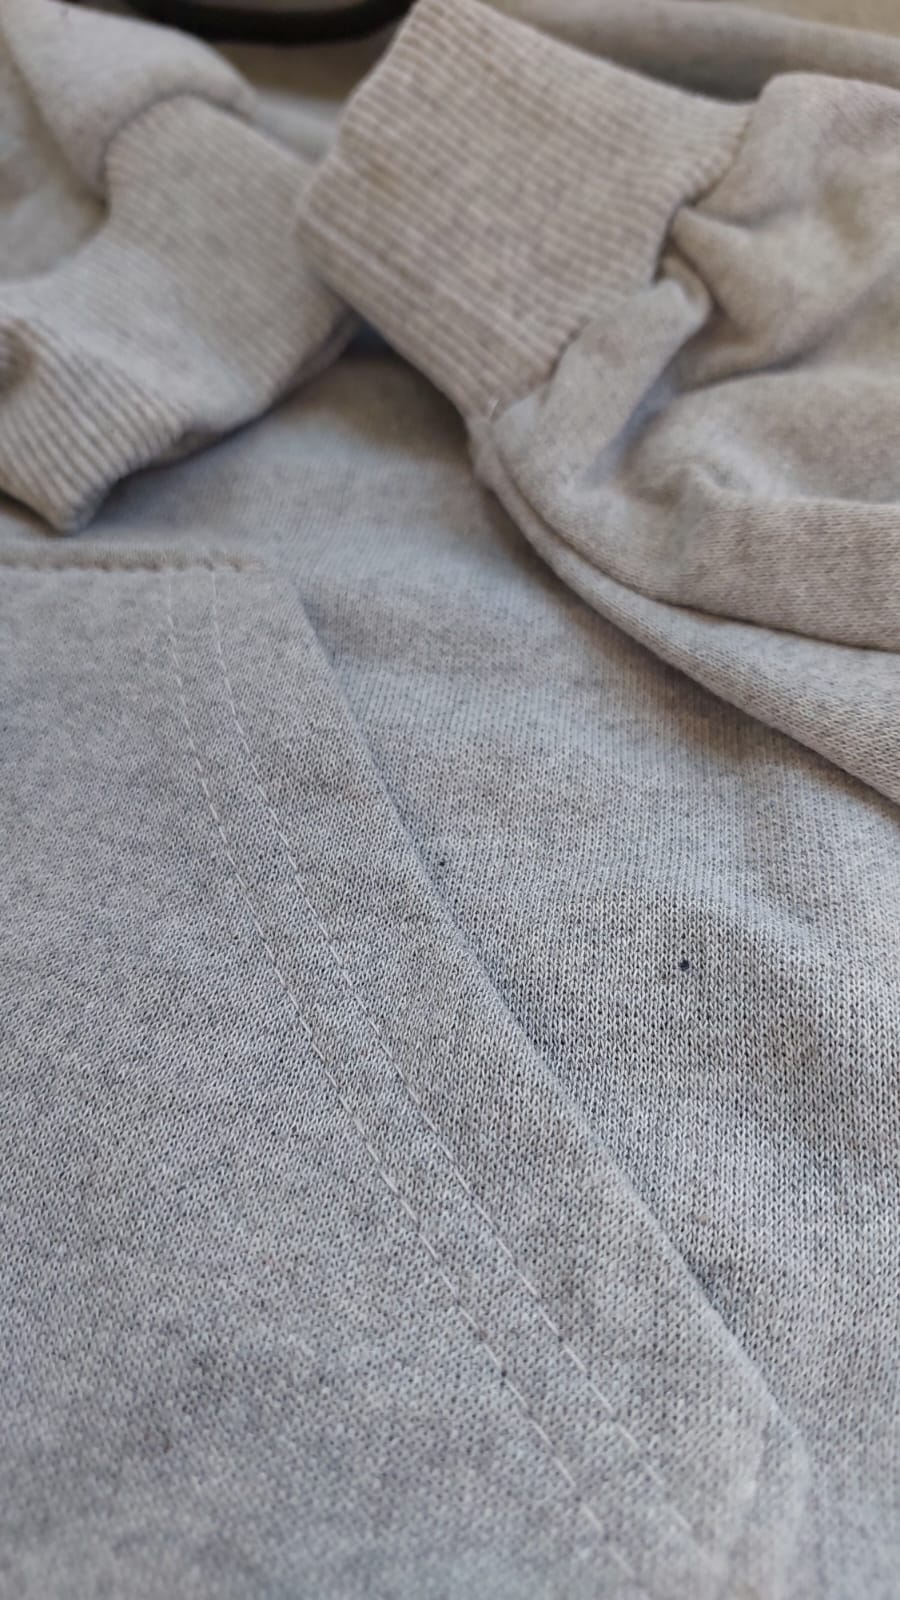 sweatshirt tasarla uygun fiyat yuvarlak yaka iki iplik 11